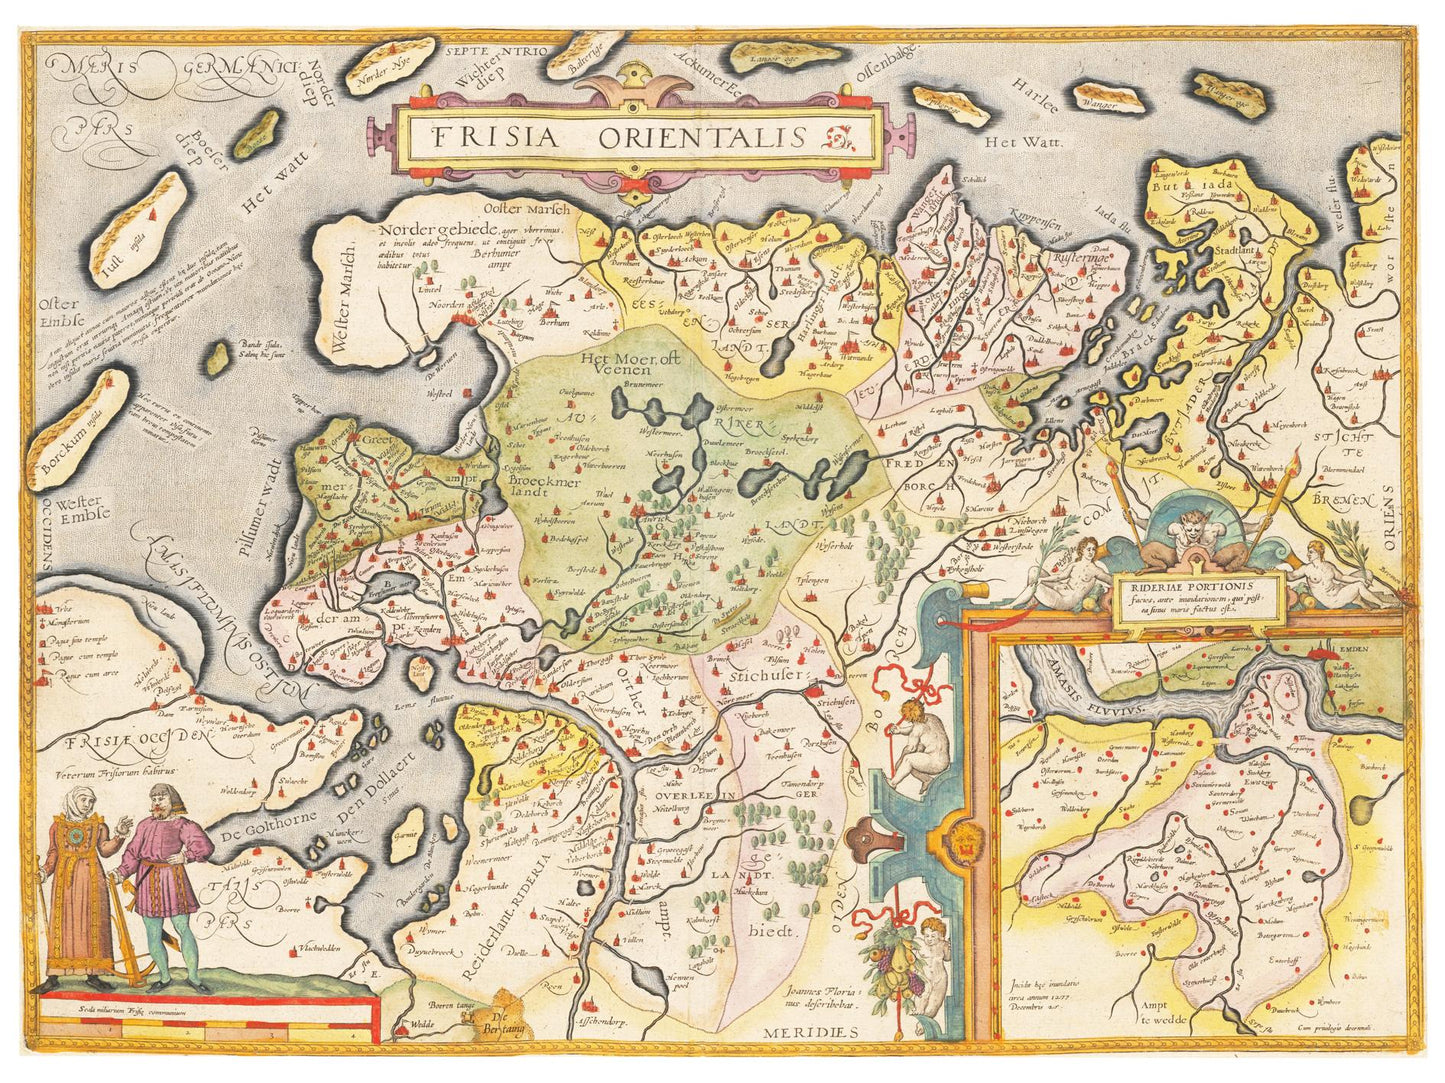 Historische Landkarte Ostfriesland um 1609